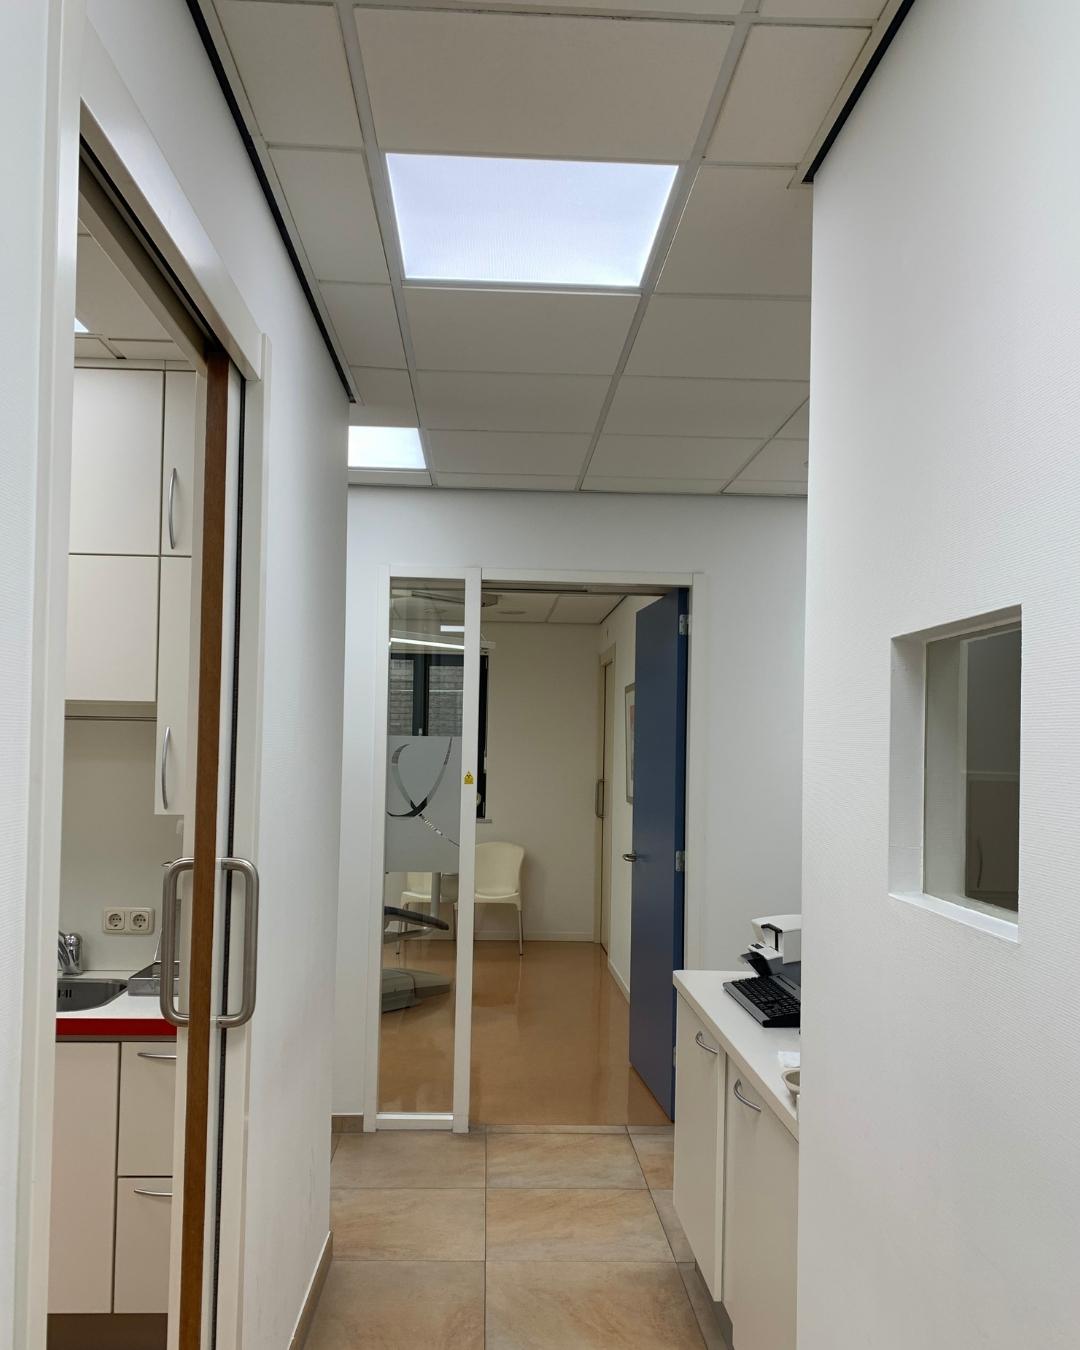 DL60 Panneau LED lumière du jour à spectre complet pour salles de traitement dentaire